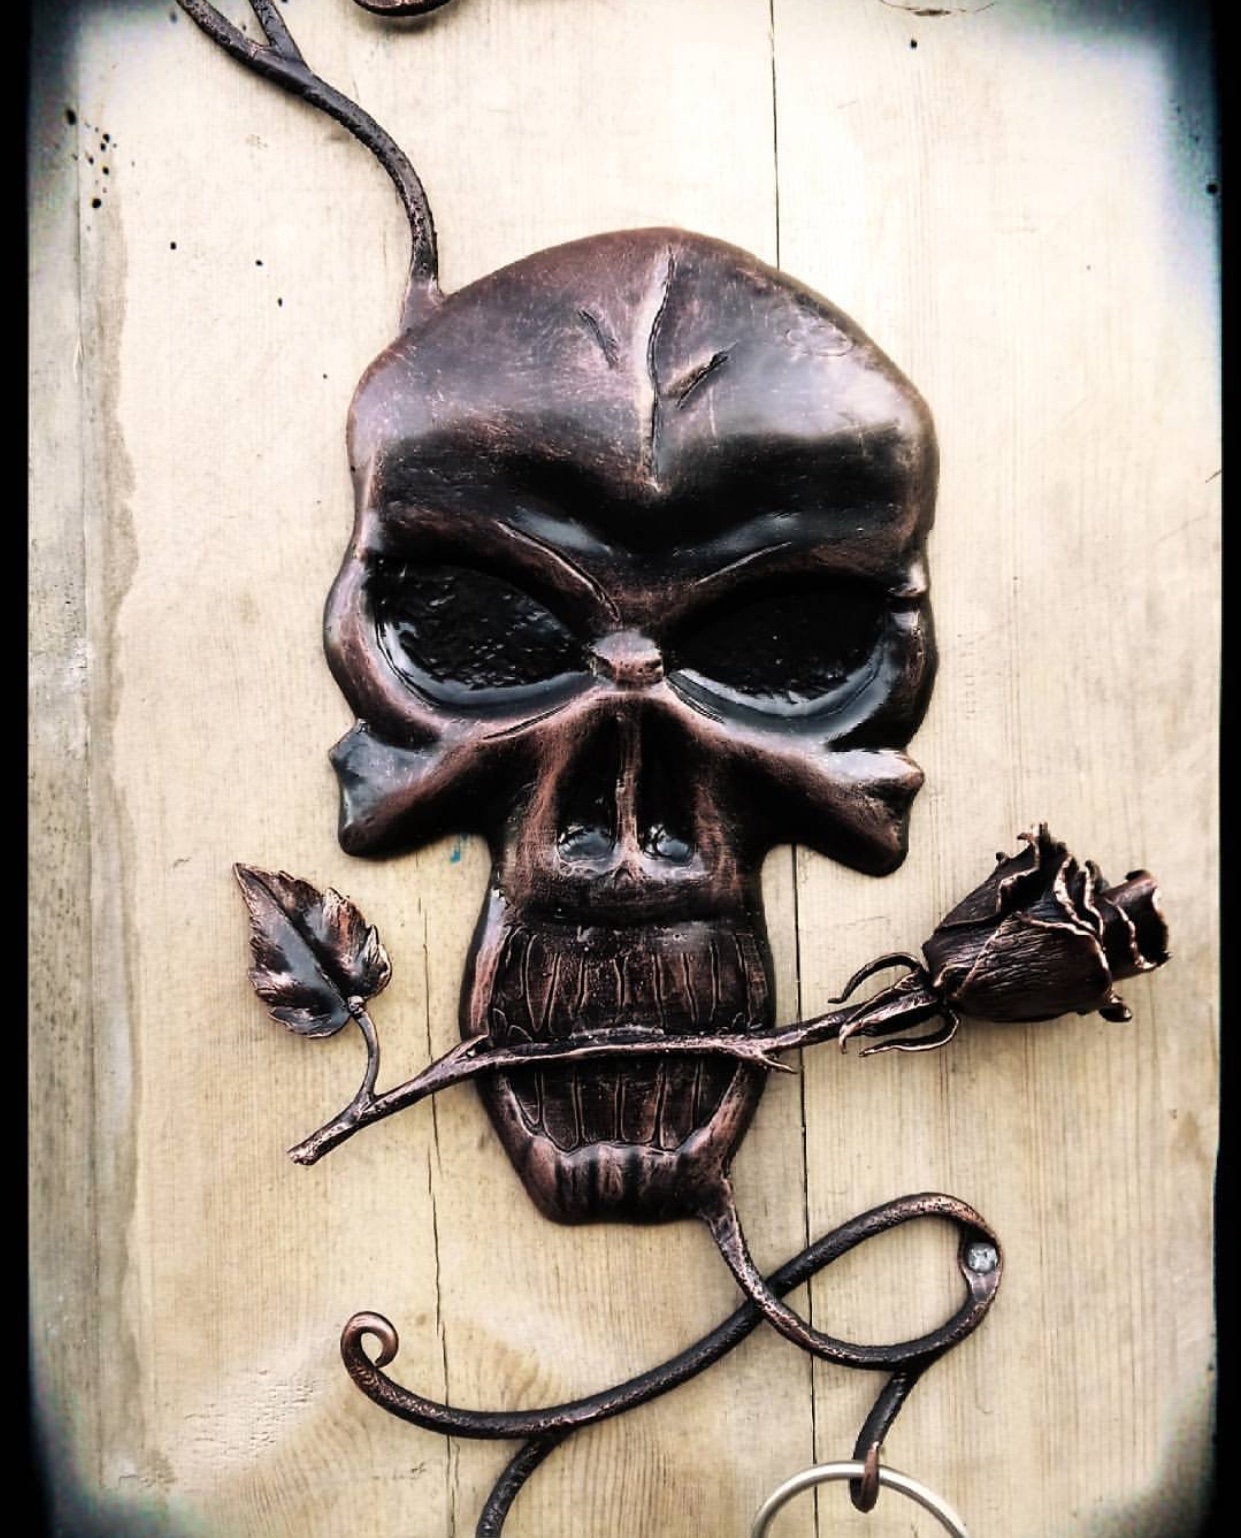 Wall hooks, hook, hooks, metal hooks, clothing hooks, Halloween gift, horror gift, Halloween, skull, skull with flowers, wall key holder